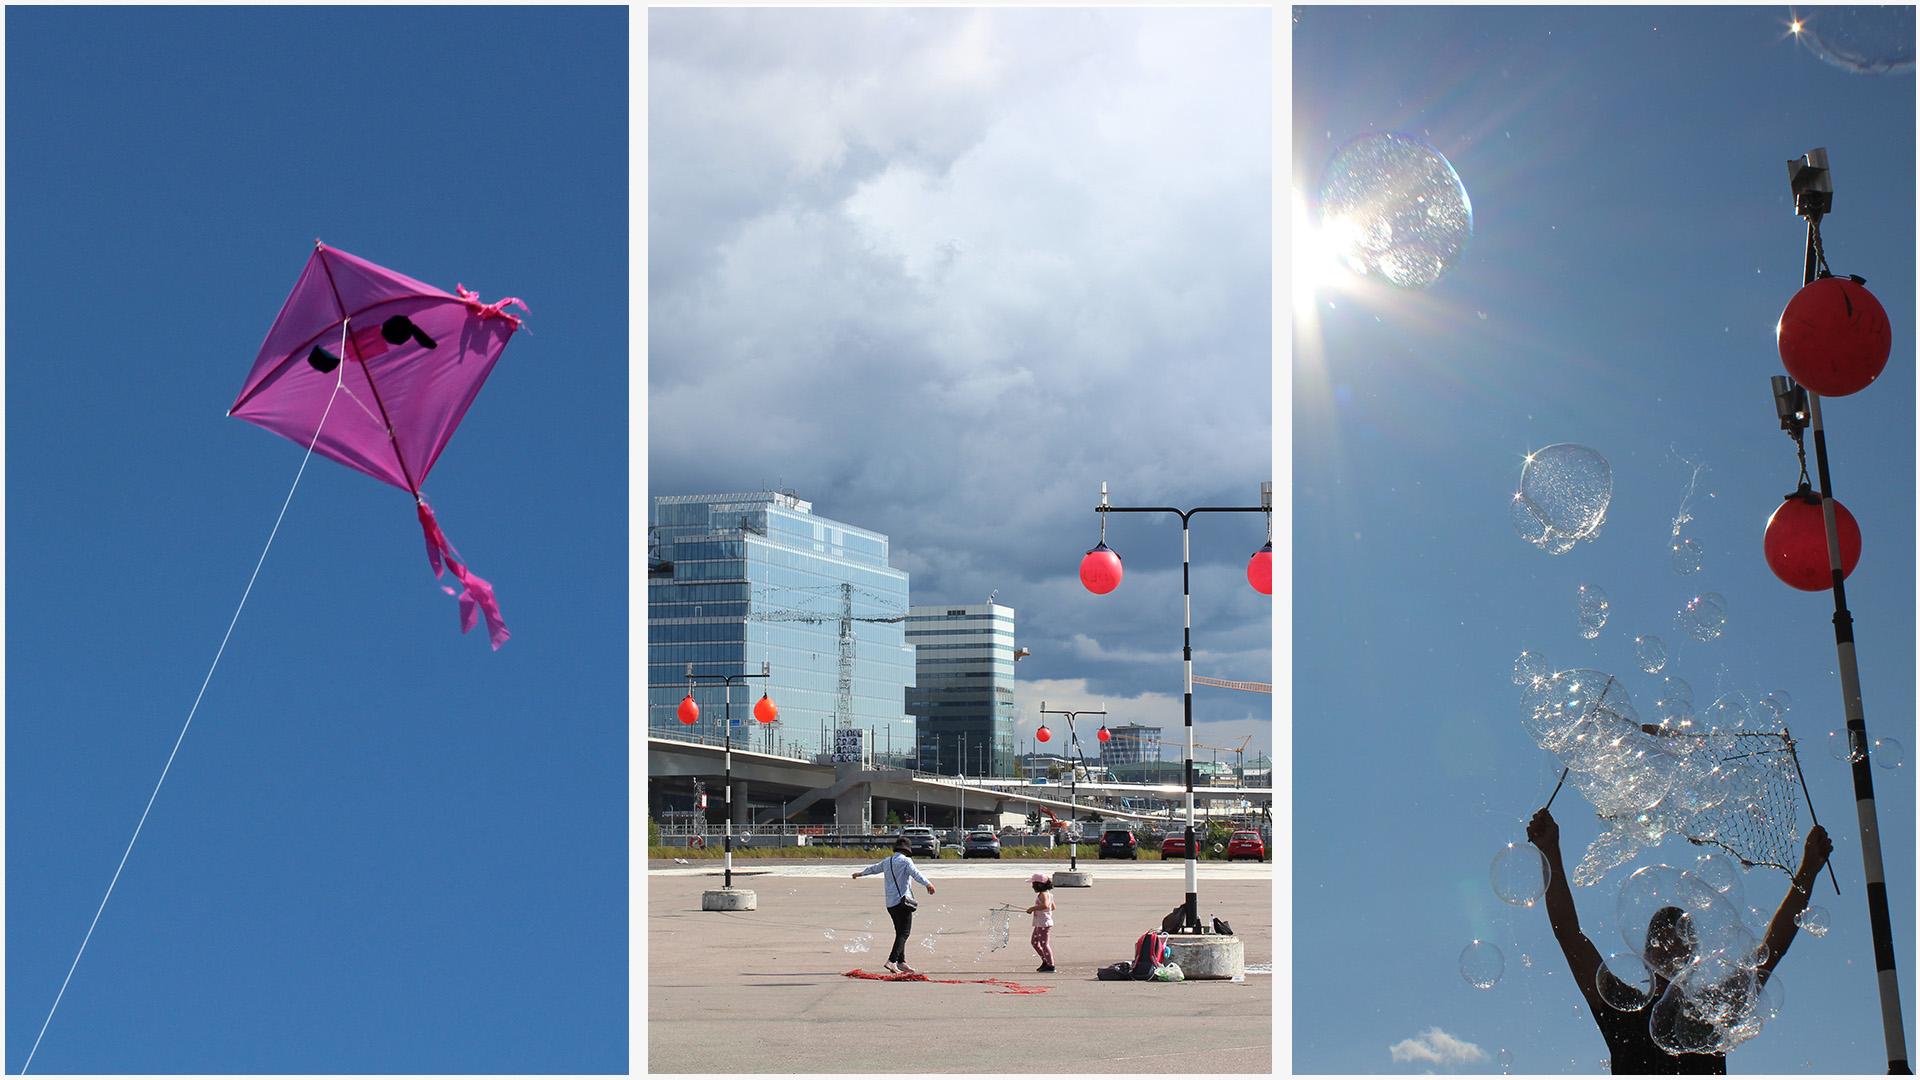 Kollage av tre bilder, en på en rosa drake flyger i en blå himmel, en på vindparken i Frihamnen med svartvitrandiga stolpar som det hänger röda flytbojar på och en på en person som håller upp ett fiskenät som det kommer såpbubblor ur.